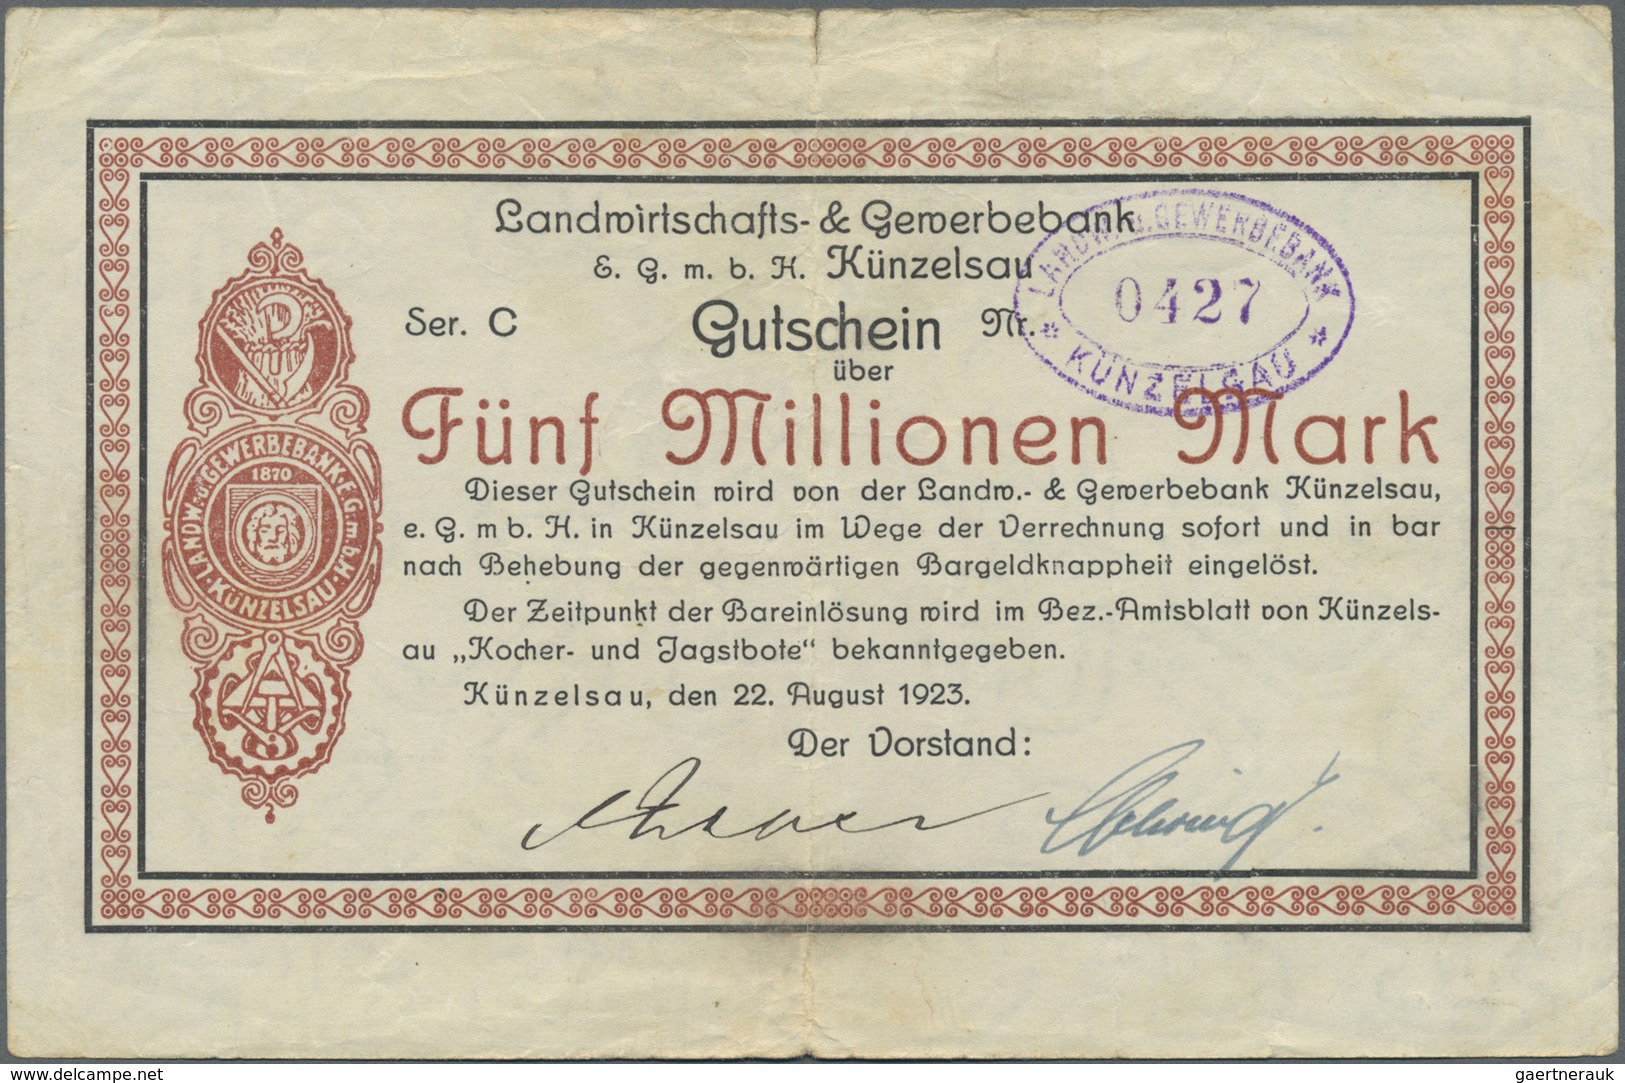 Deutschland - Notgeld - Württemberg: Künzelsau, Landwirtschafts- & Gewerbebank, 1, 2, 5 Mio. Mark, 2 - [11] Local Banknote Issues